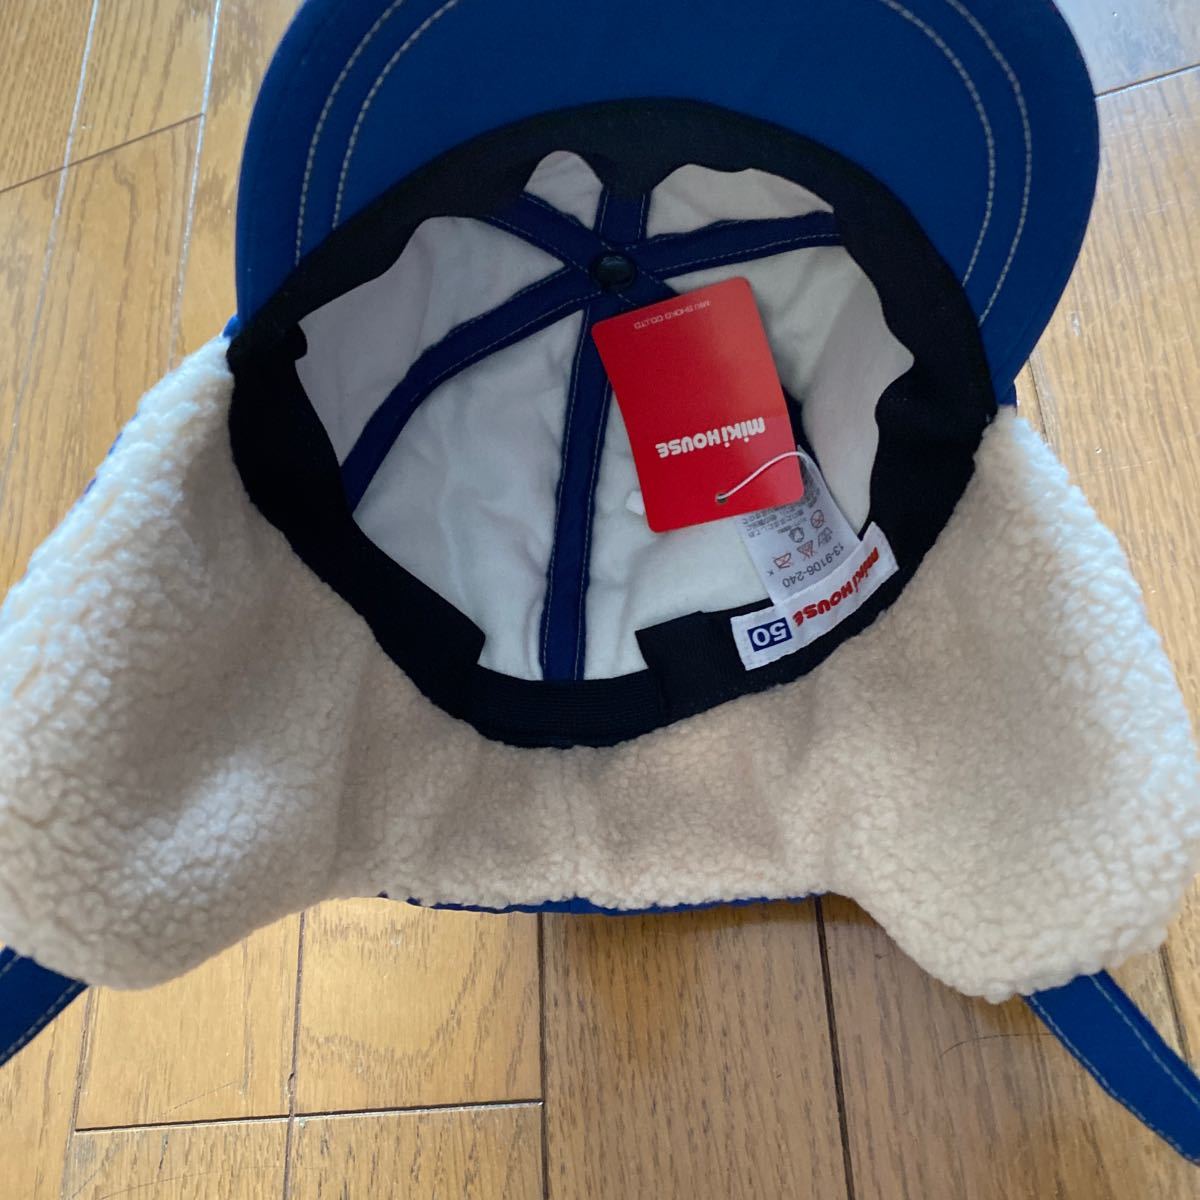 SALE быстрое решение новый товар Miki House уголок данный . имеется колпак 50 зимние виды спорта синий шляпа 